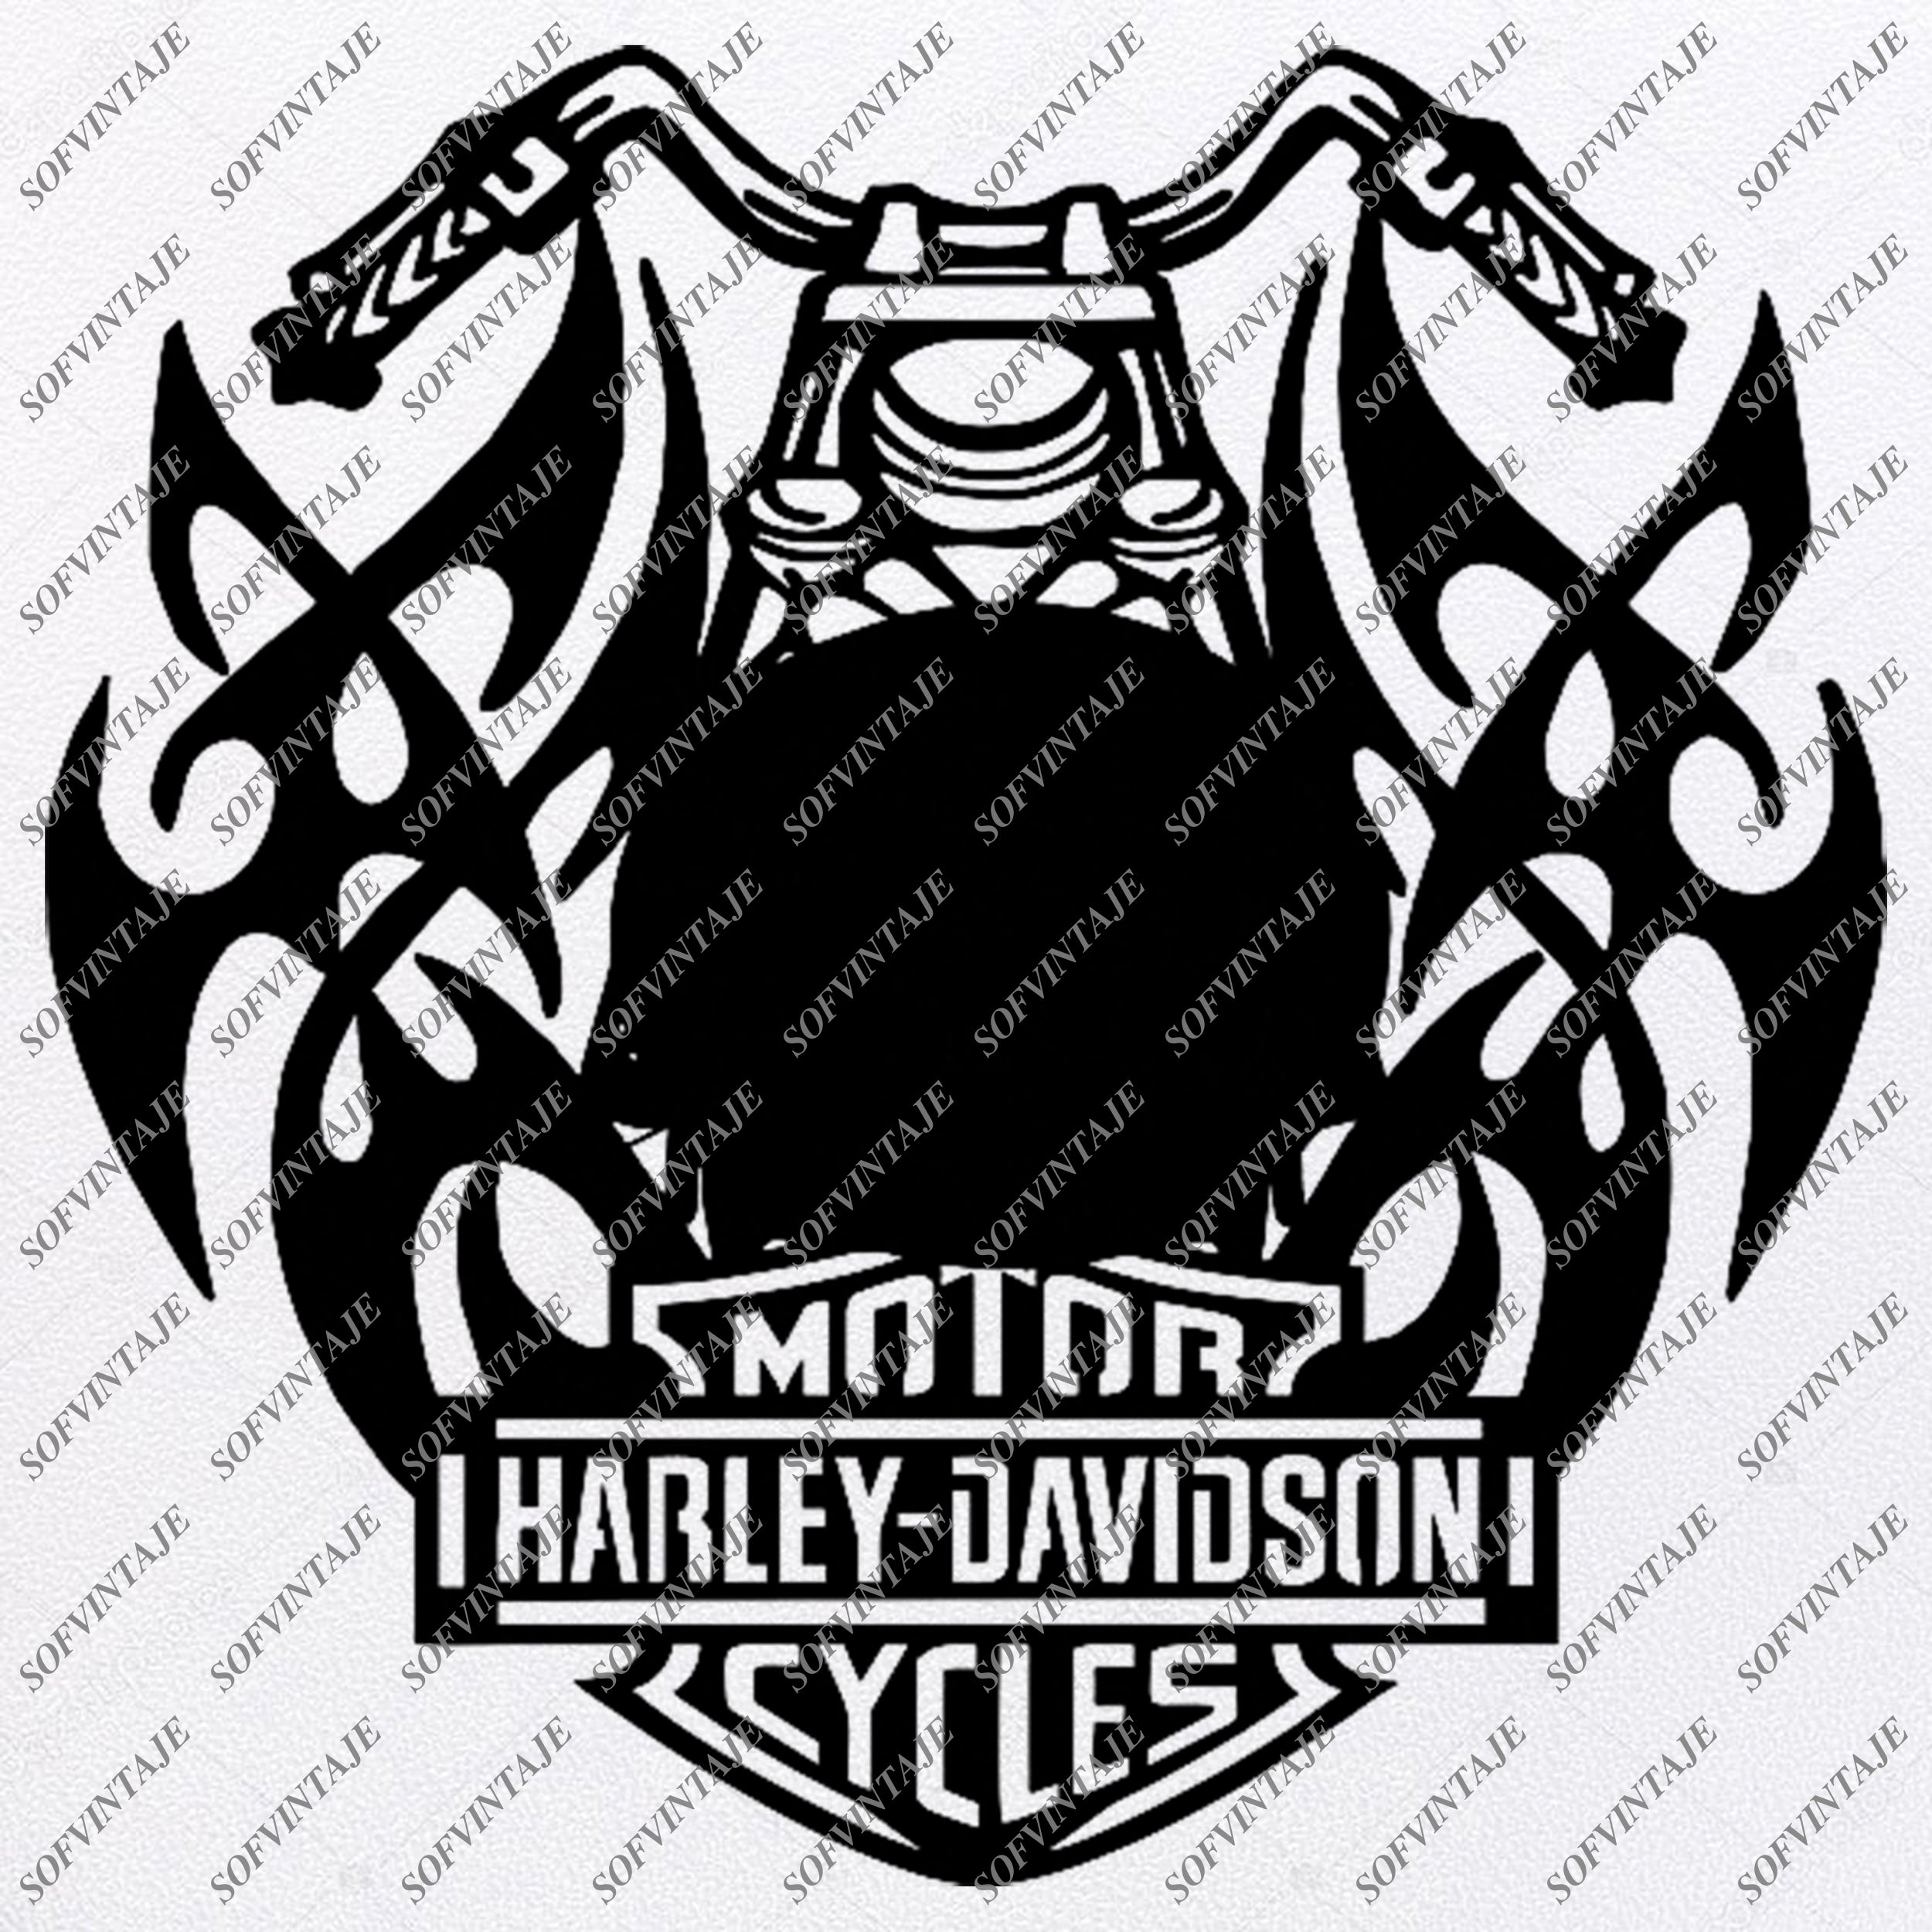 Download 33+ Free Harley Davidson Logo Svg File Images Free SVG ...